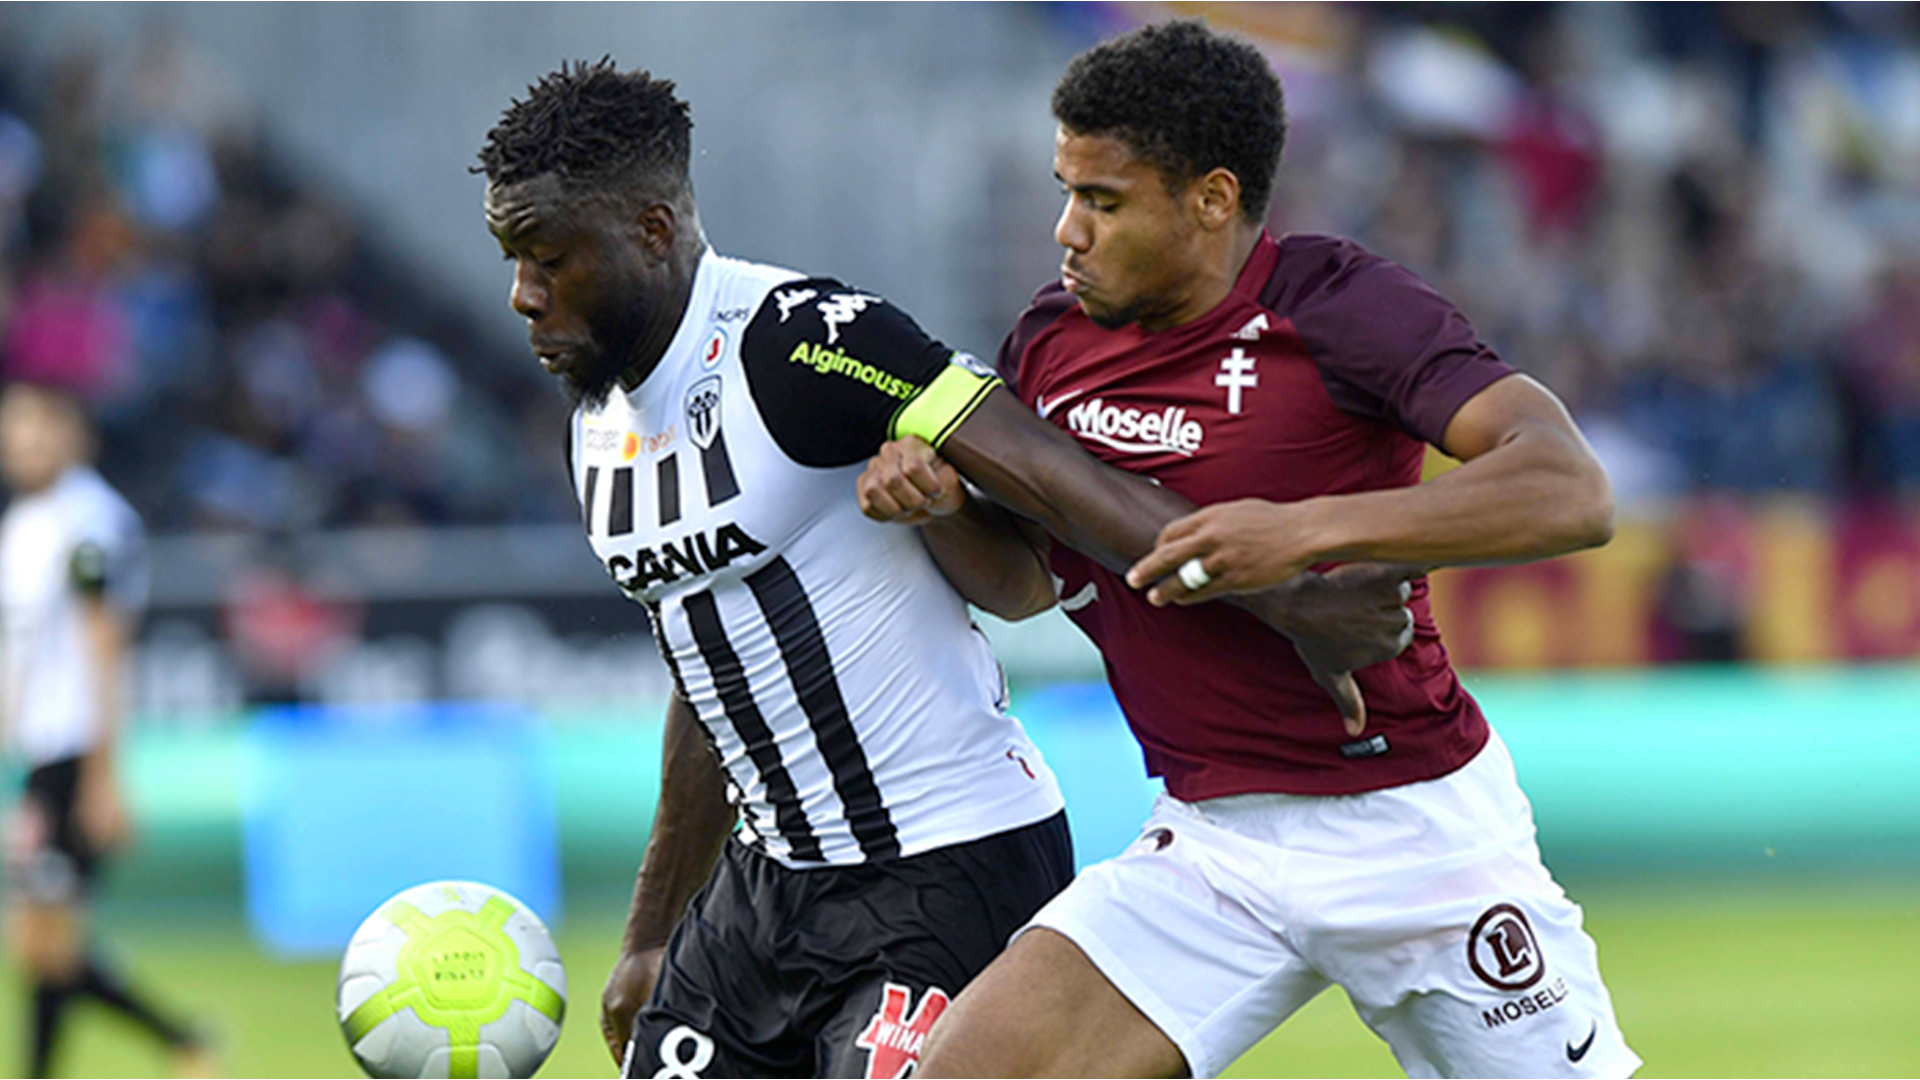 Matthieu Udol prolonge au FC Metz